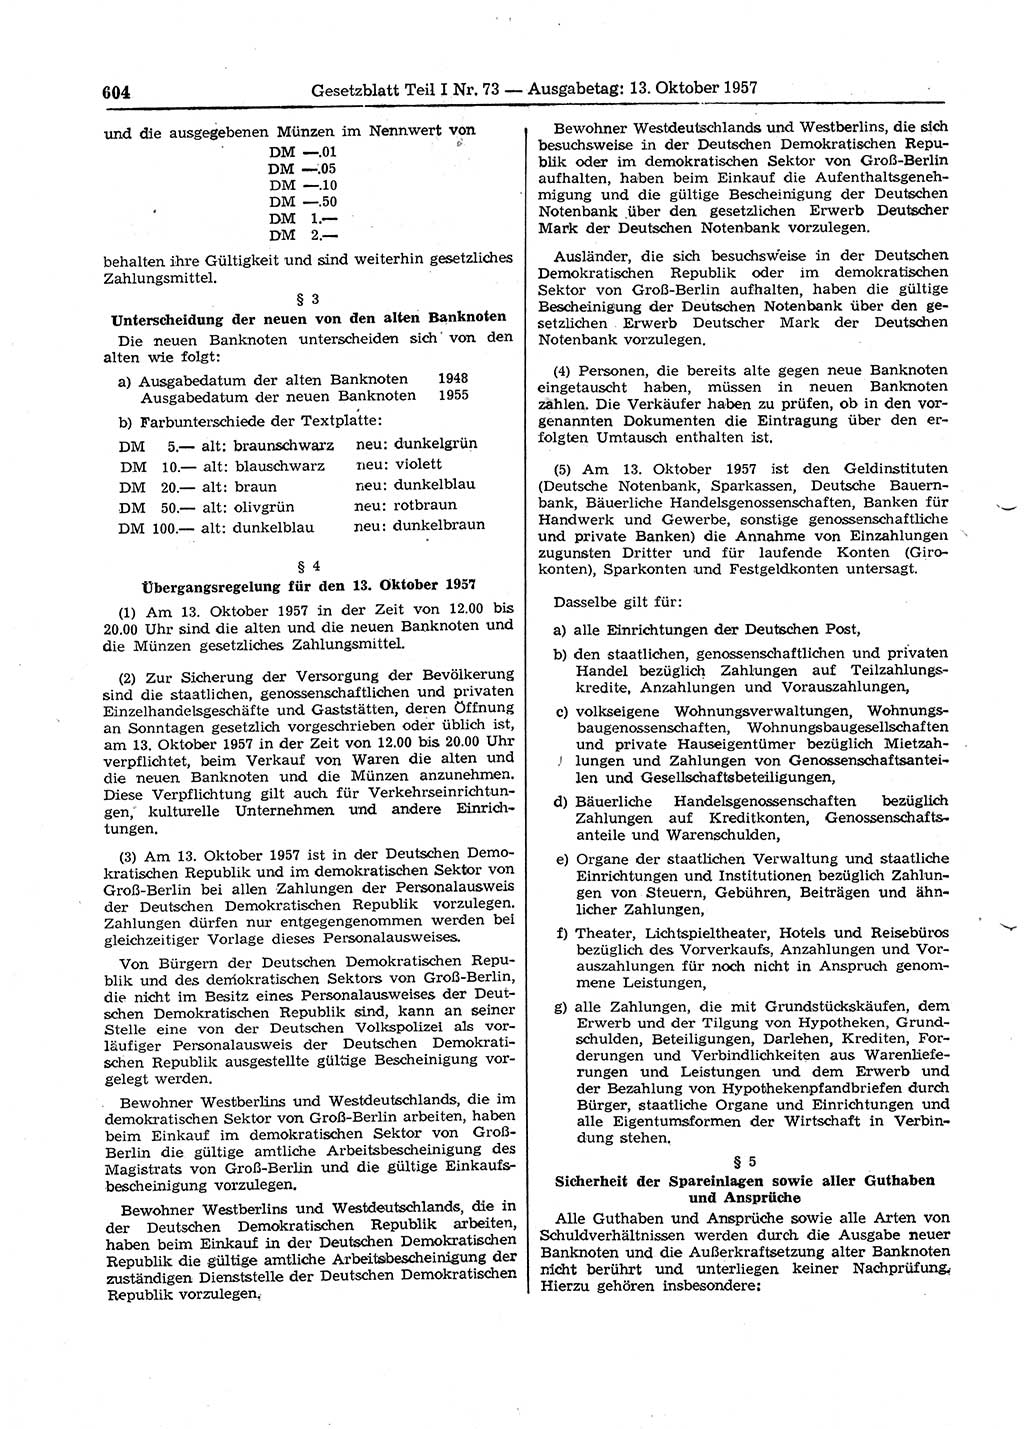 Gesetzblatt (GBl.) der Deutschen Demokratischen Republik (DDR) Teil Ⅰ 1957, Seite 604 (GBl. DDR Ⅰ 1957, S. 604)